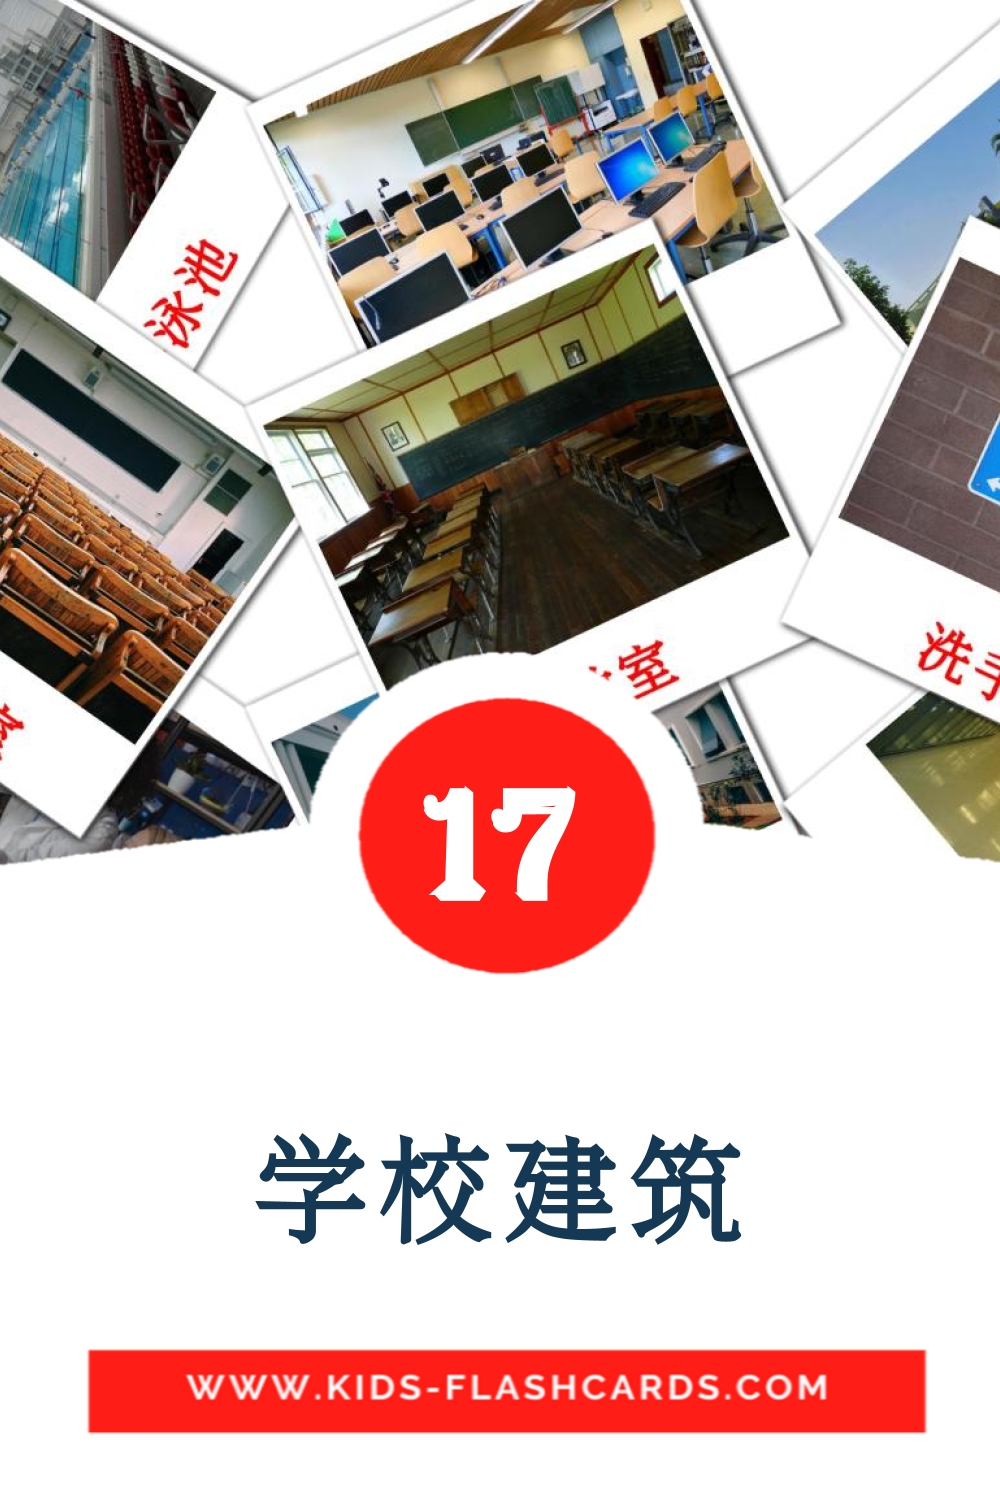 17 学校建筑 Picture Cards for Kindergarden in chinese(Traditional)